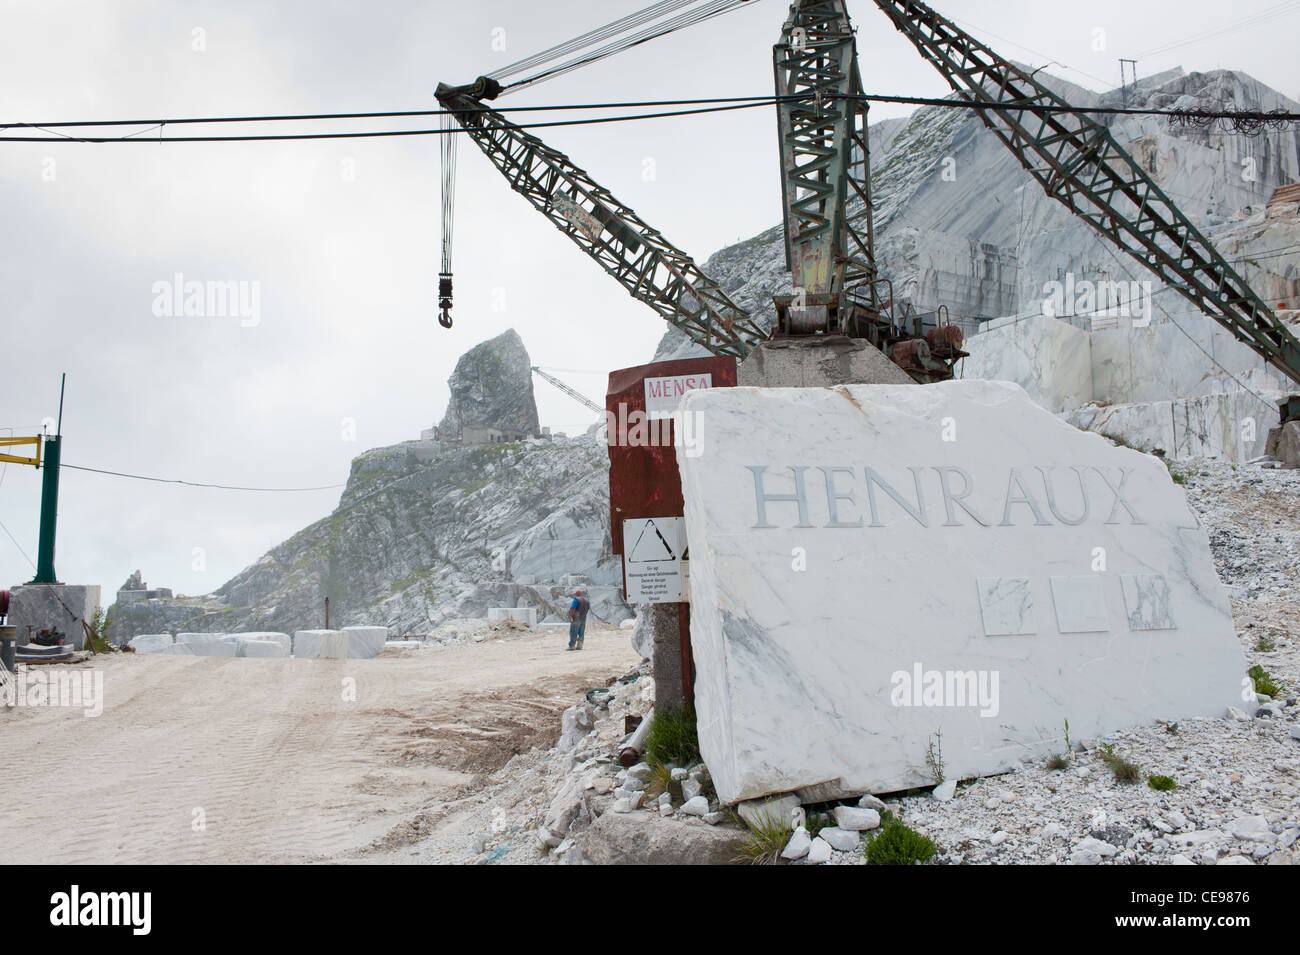 Alpi Apuane- Italia- Cava di marmo Henraux Foto Stock